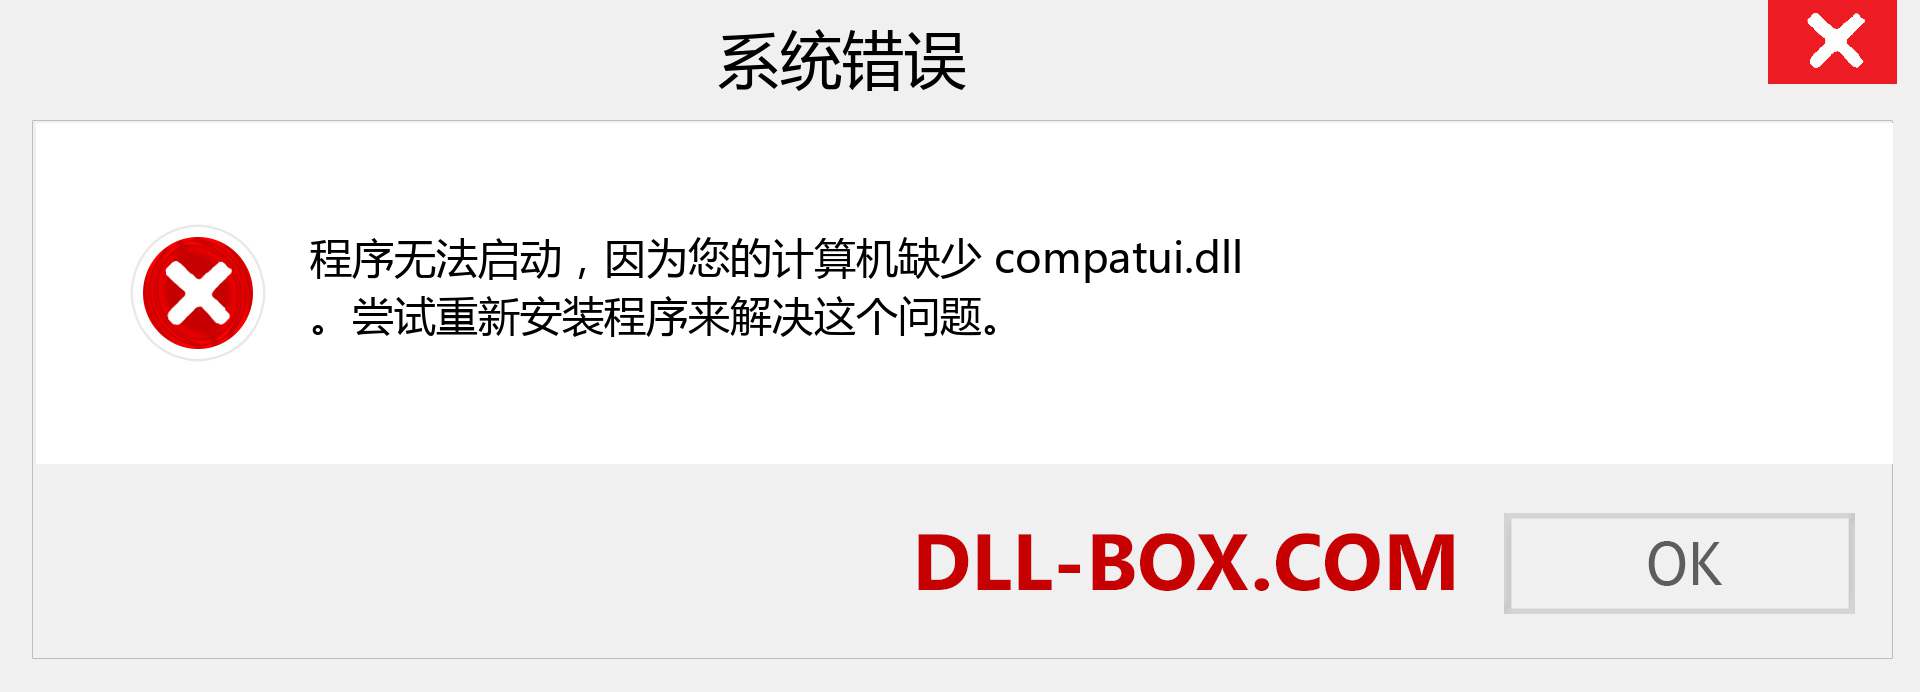 compatui.dll 文件丢失？。 适用于 Windows 7、8、10 的下载 - 修复 Windows、照片、图像上的 compatui dll 丢失错误